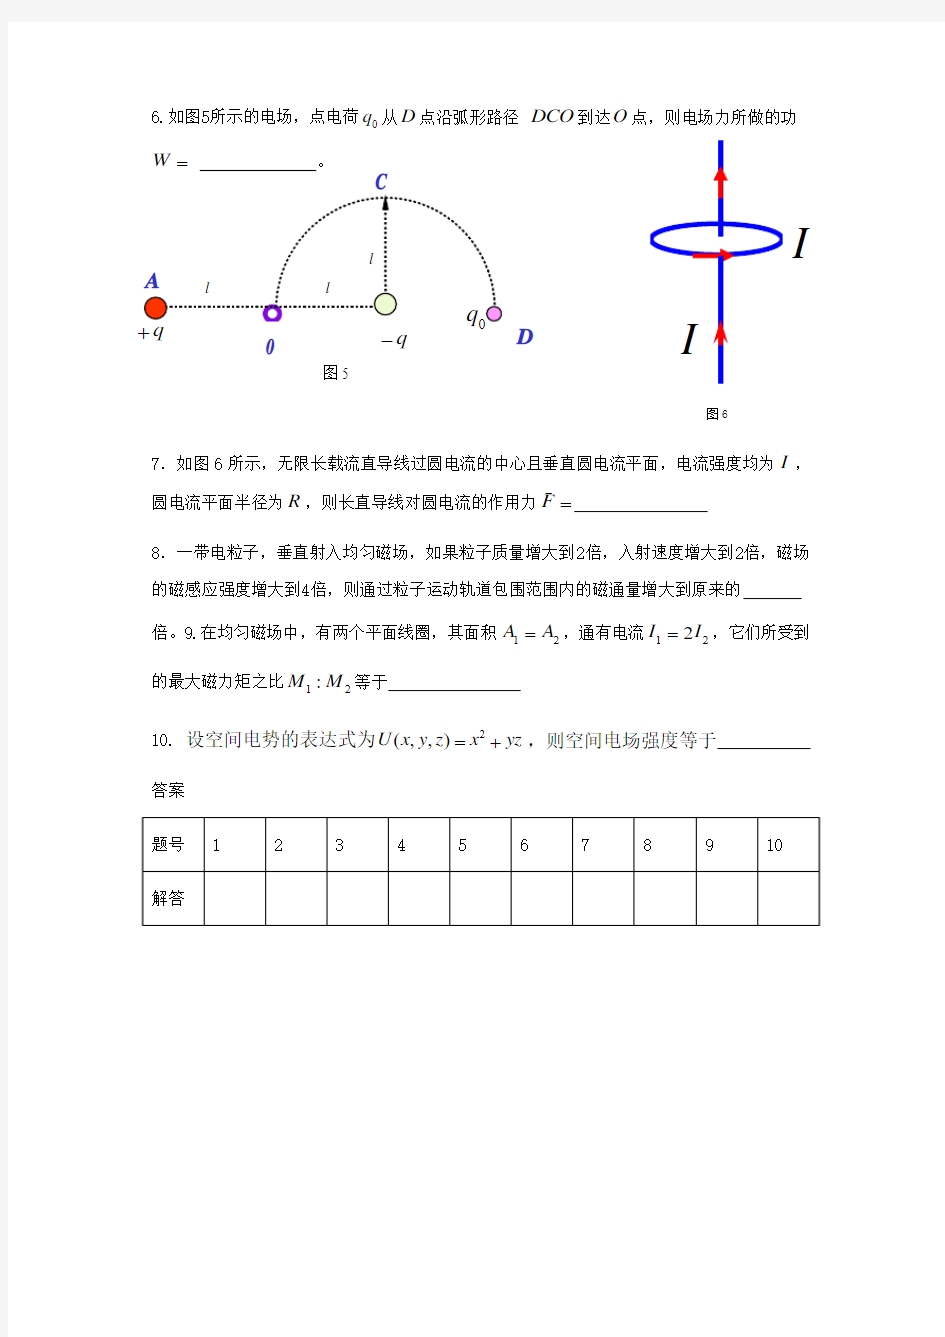 华南农业大学大学物理A静电场与稳恒磁场课堂测试题